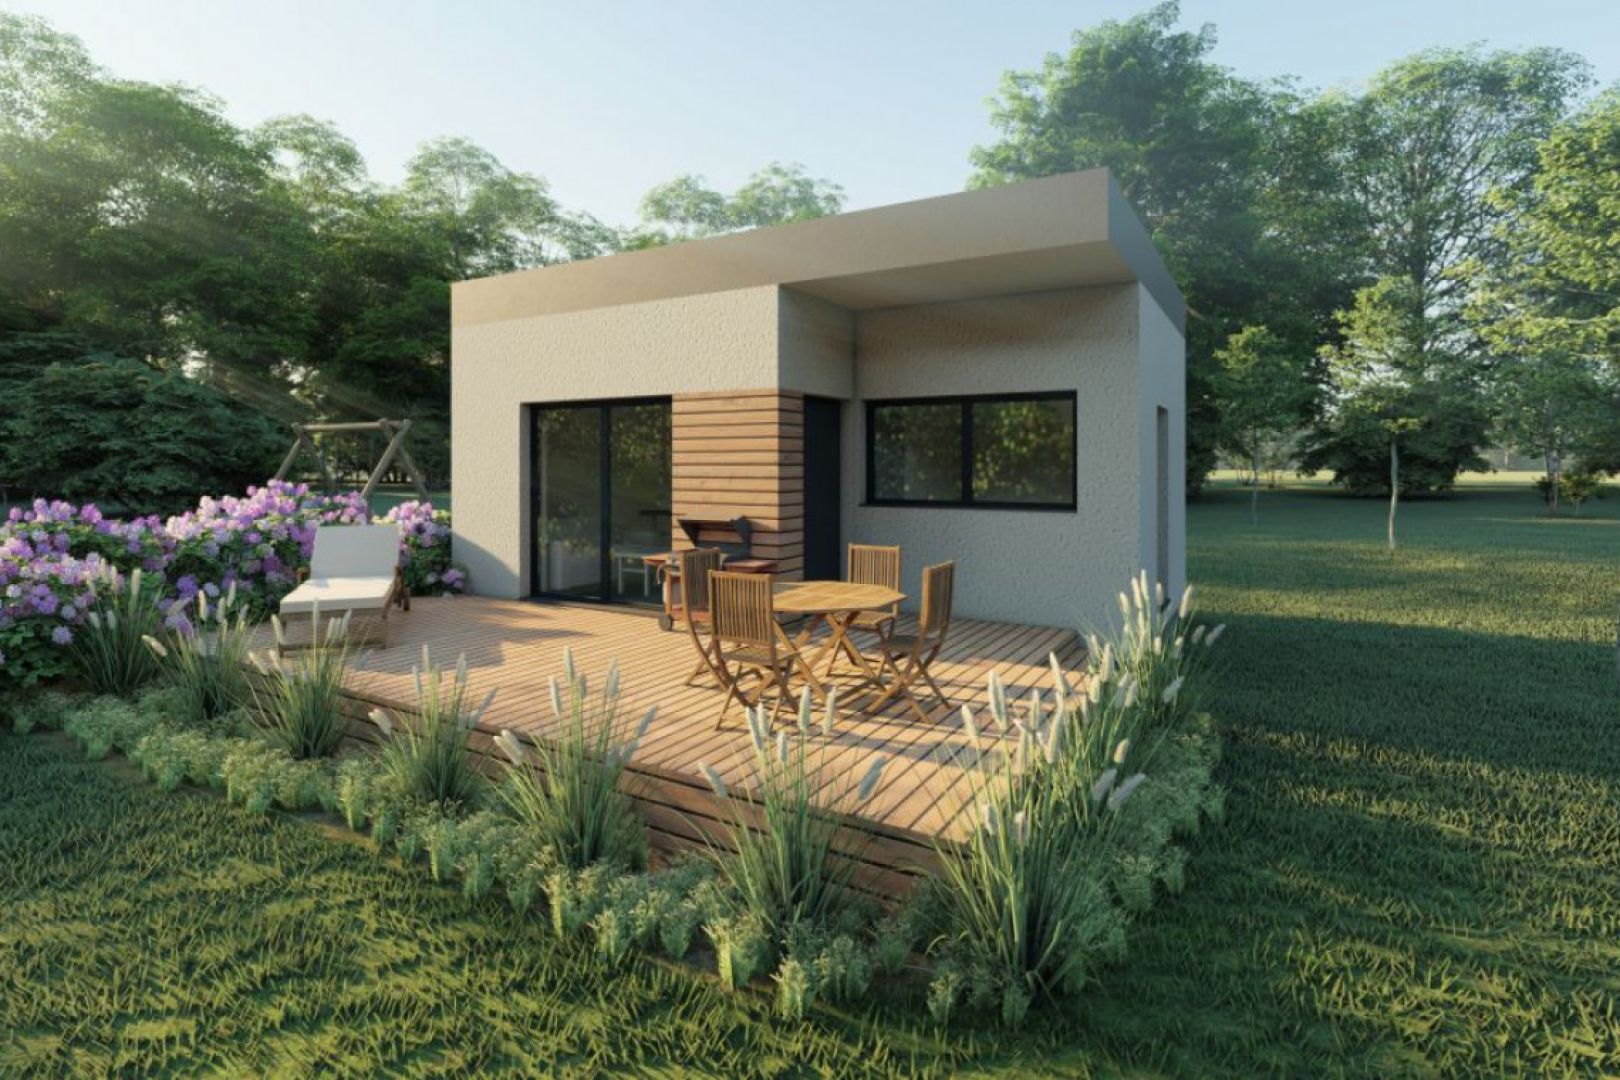 Dom składać się będzie z kuchni połączonej z salonem, oddzielnej sypialni i łazienki. Fot. Wood Core House